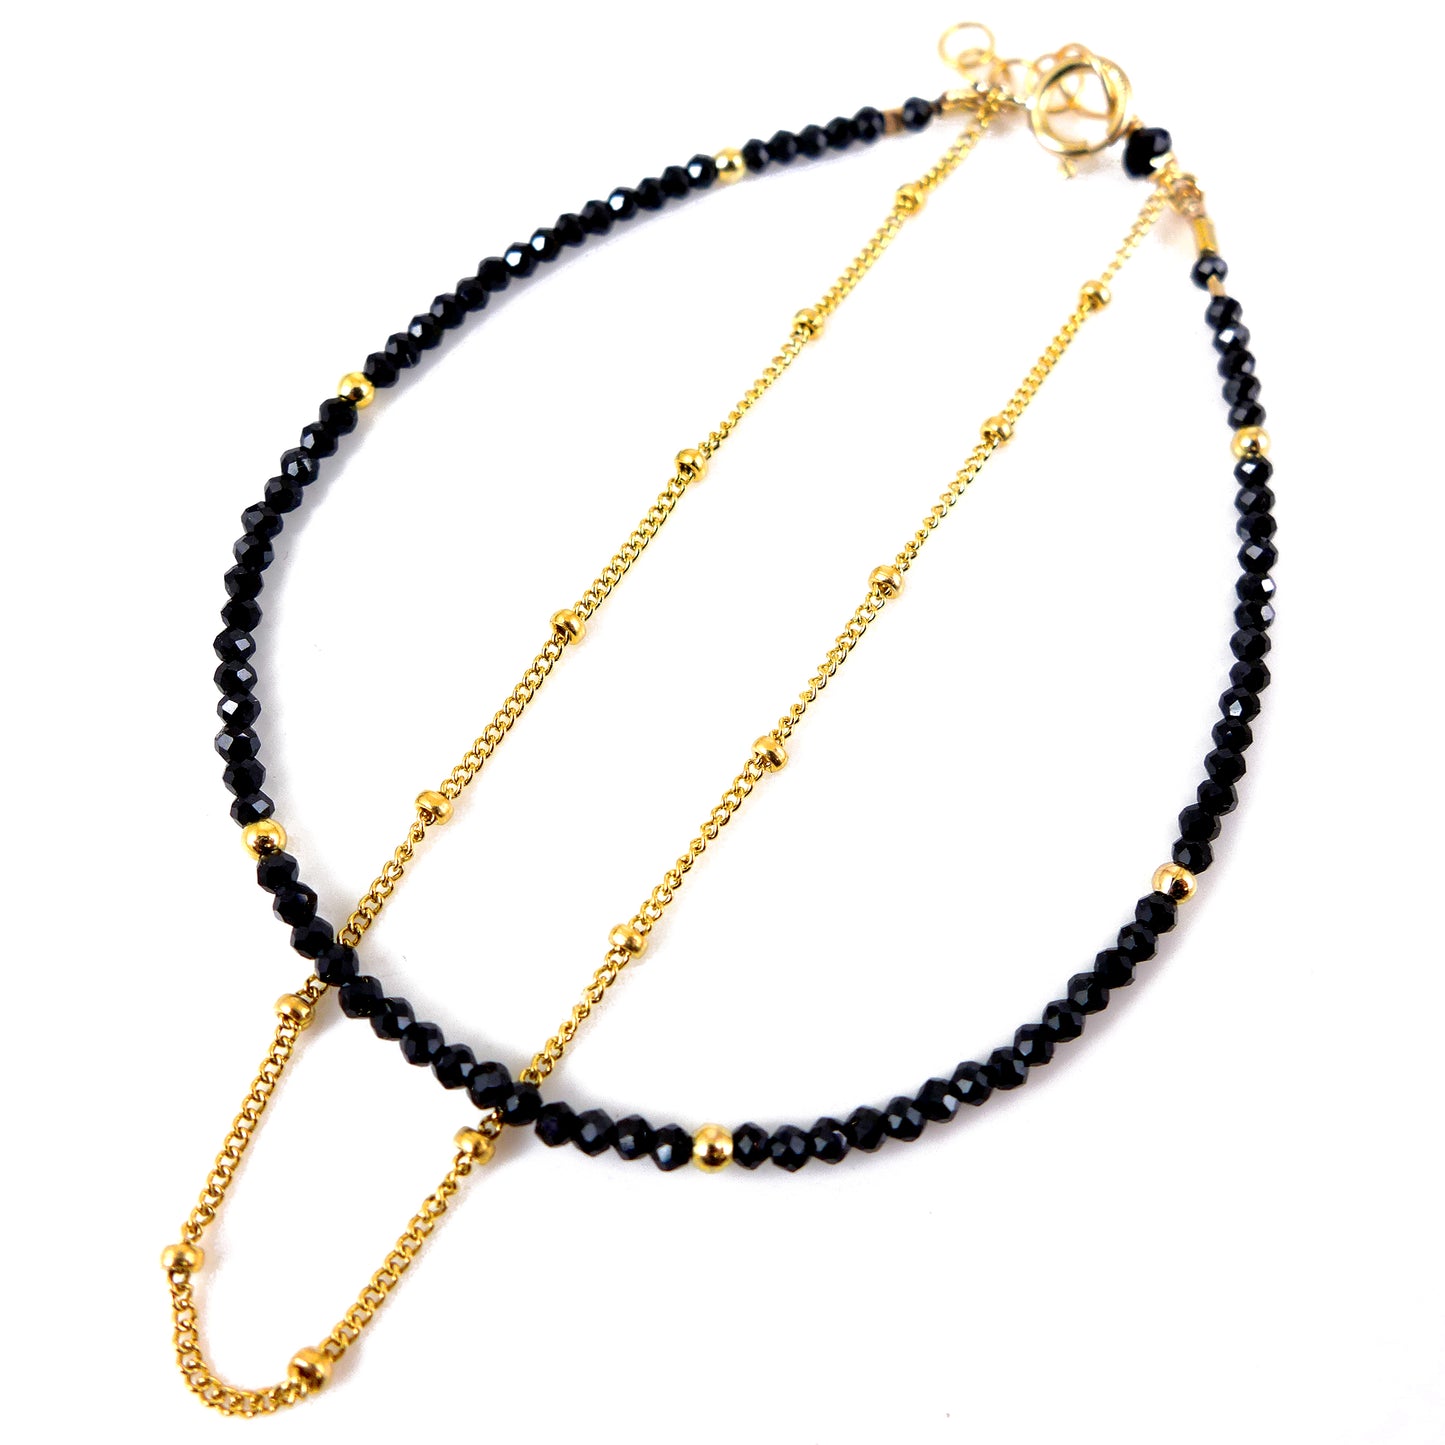 Black spinel and Gold Filled Bracelet - Karen Morrison Jewellery